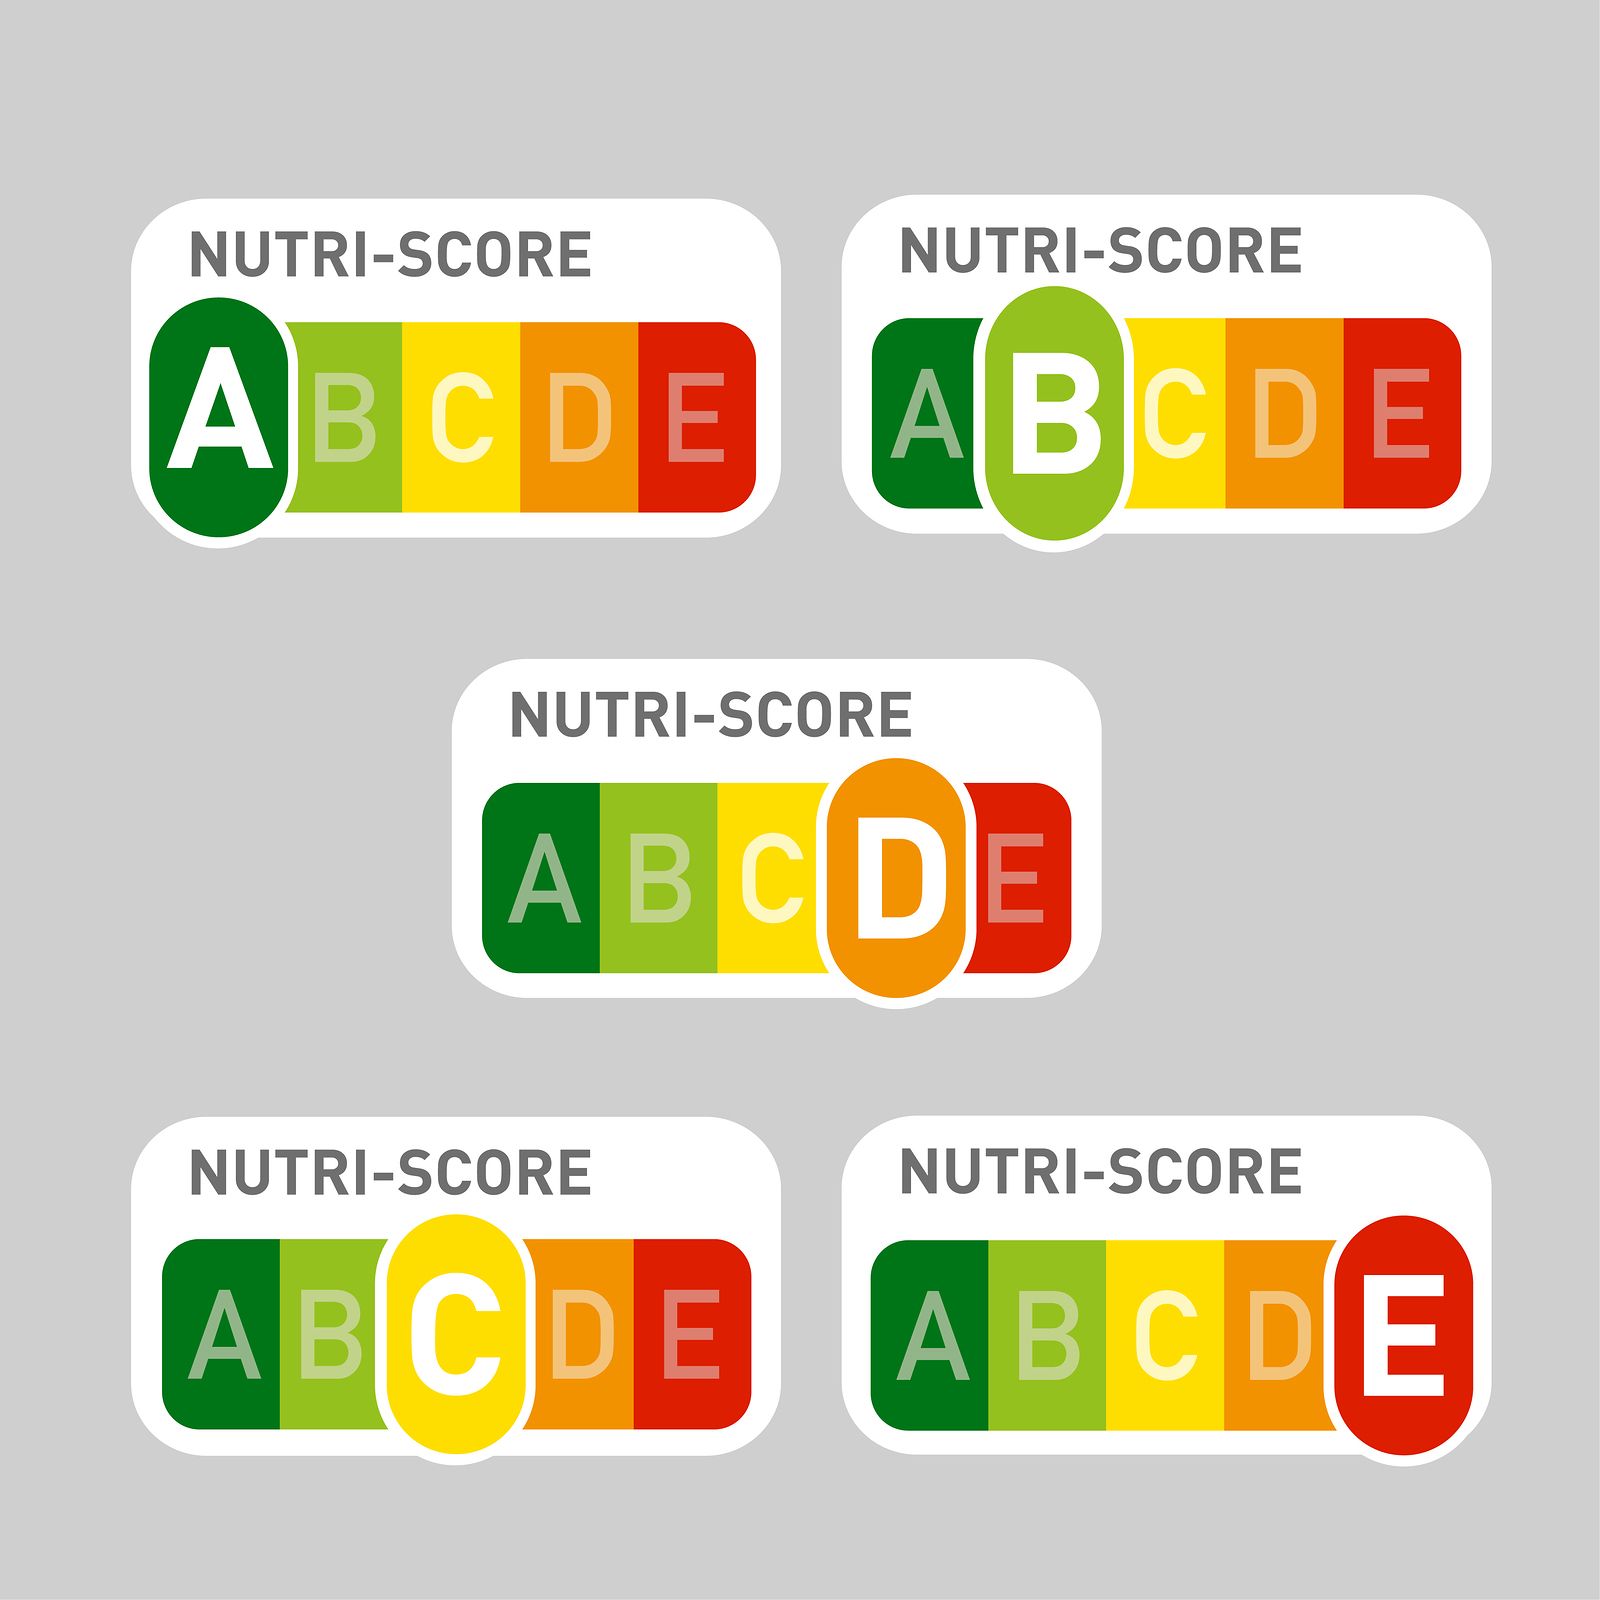 Qué son los productos 'Nutri-score' y por qué los consumidores presionan para que se etiqueten